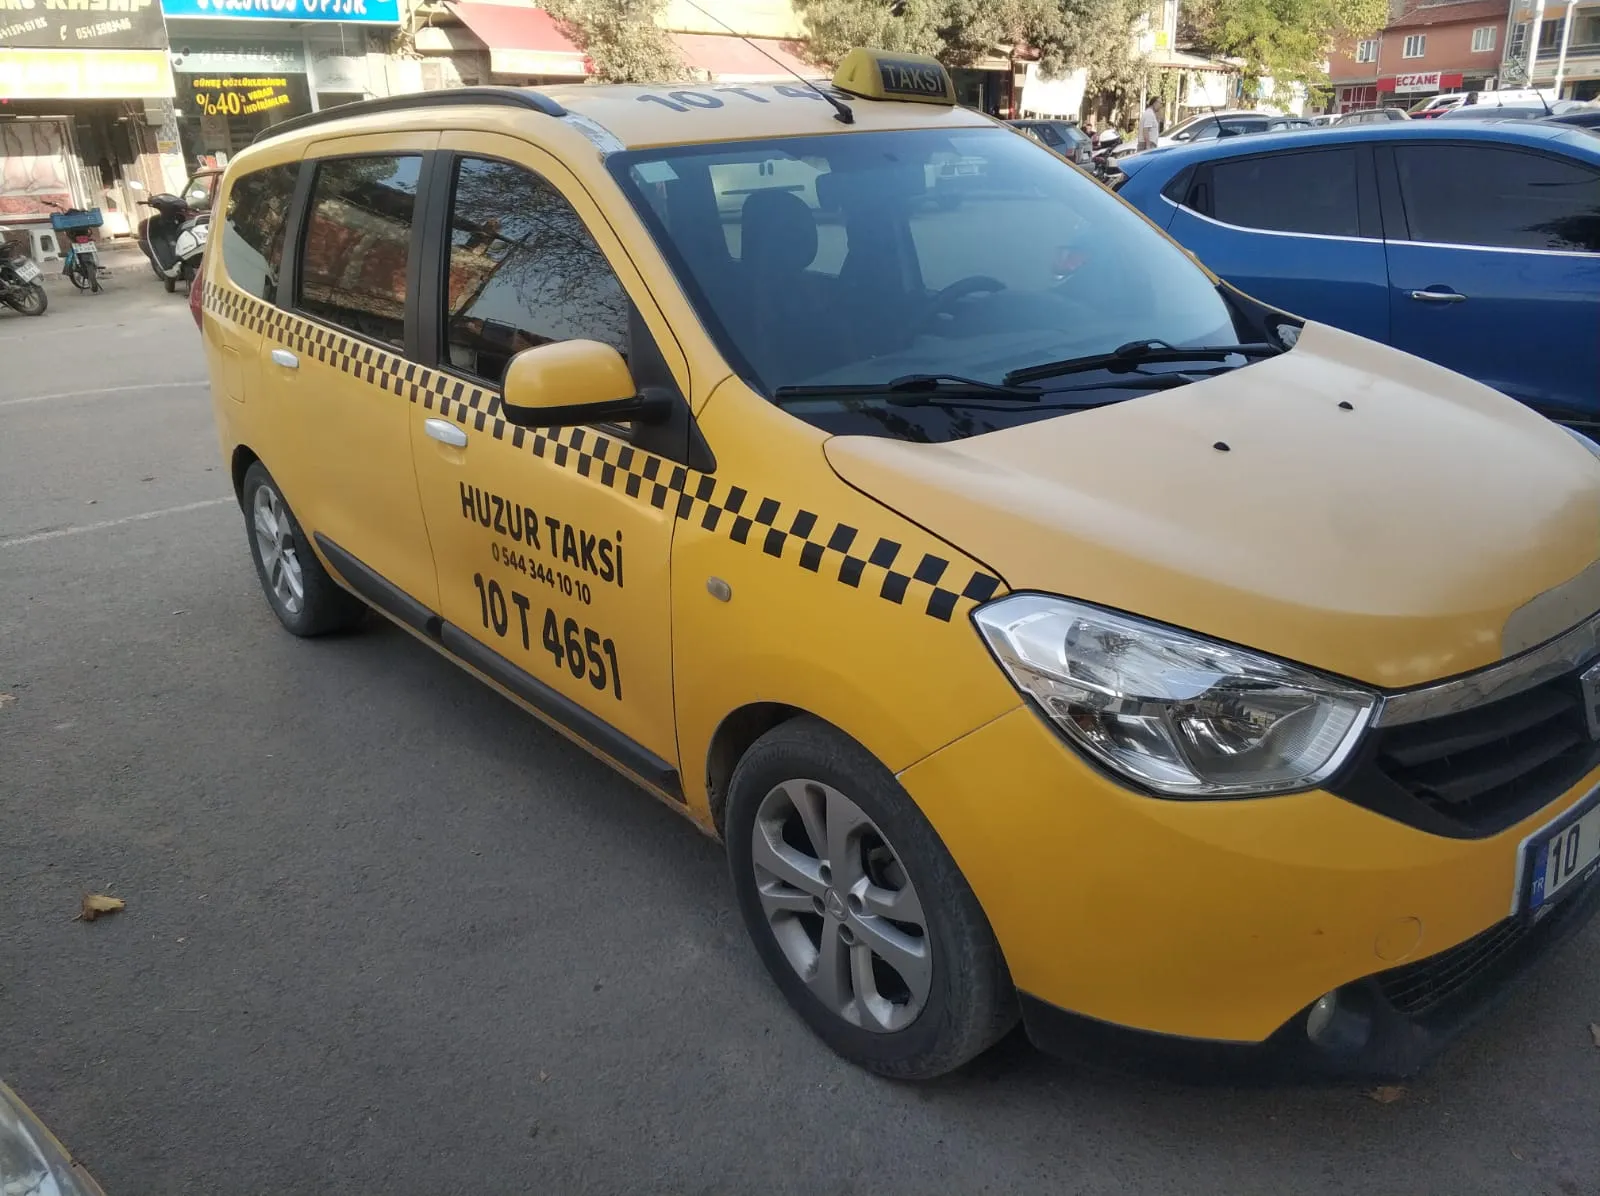 İvrindi Huzur Taksi: Güvenli ve Hızlı Ulaşımın Adı